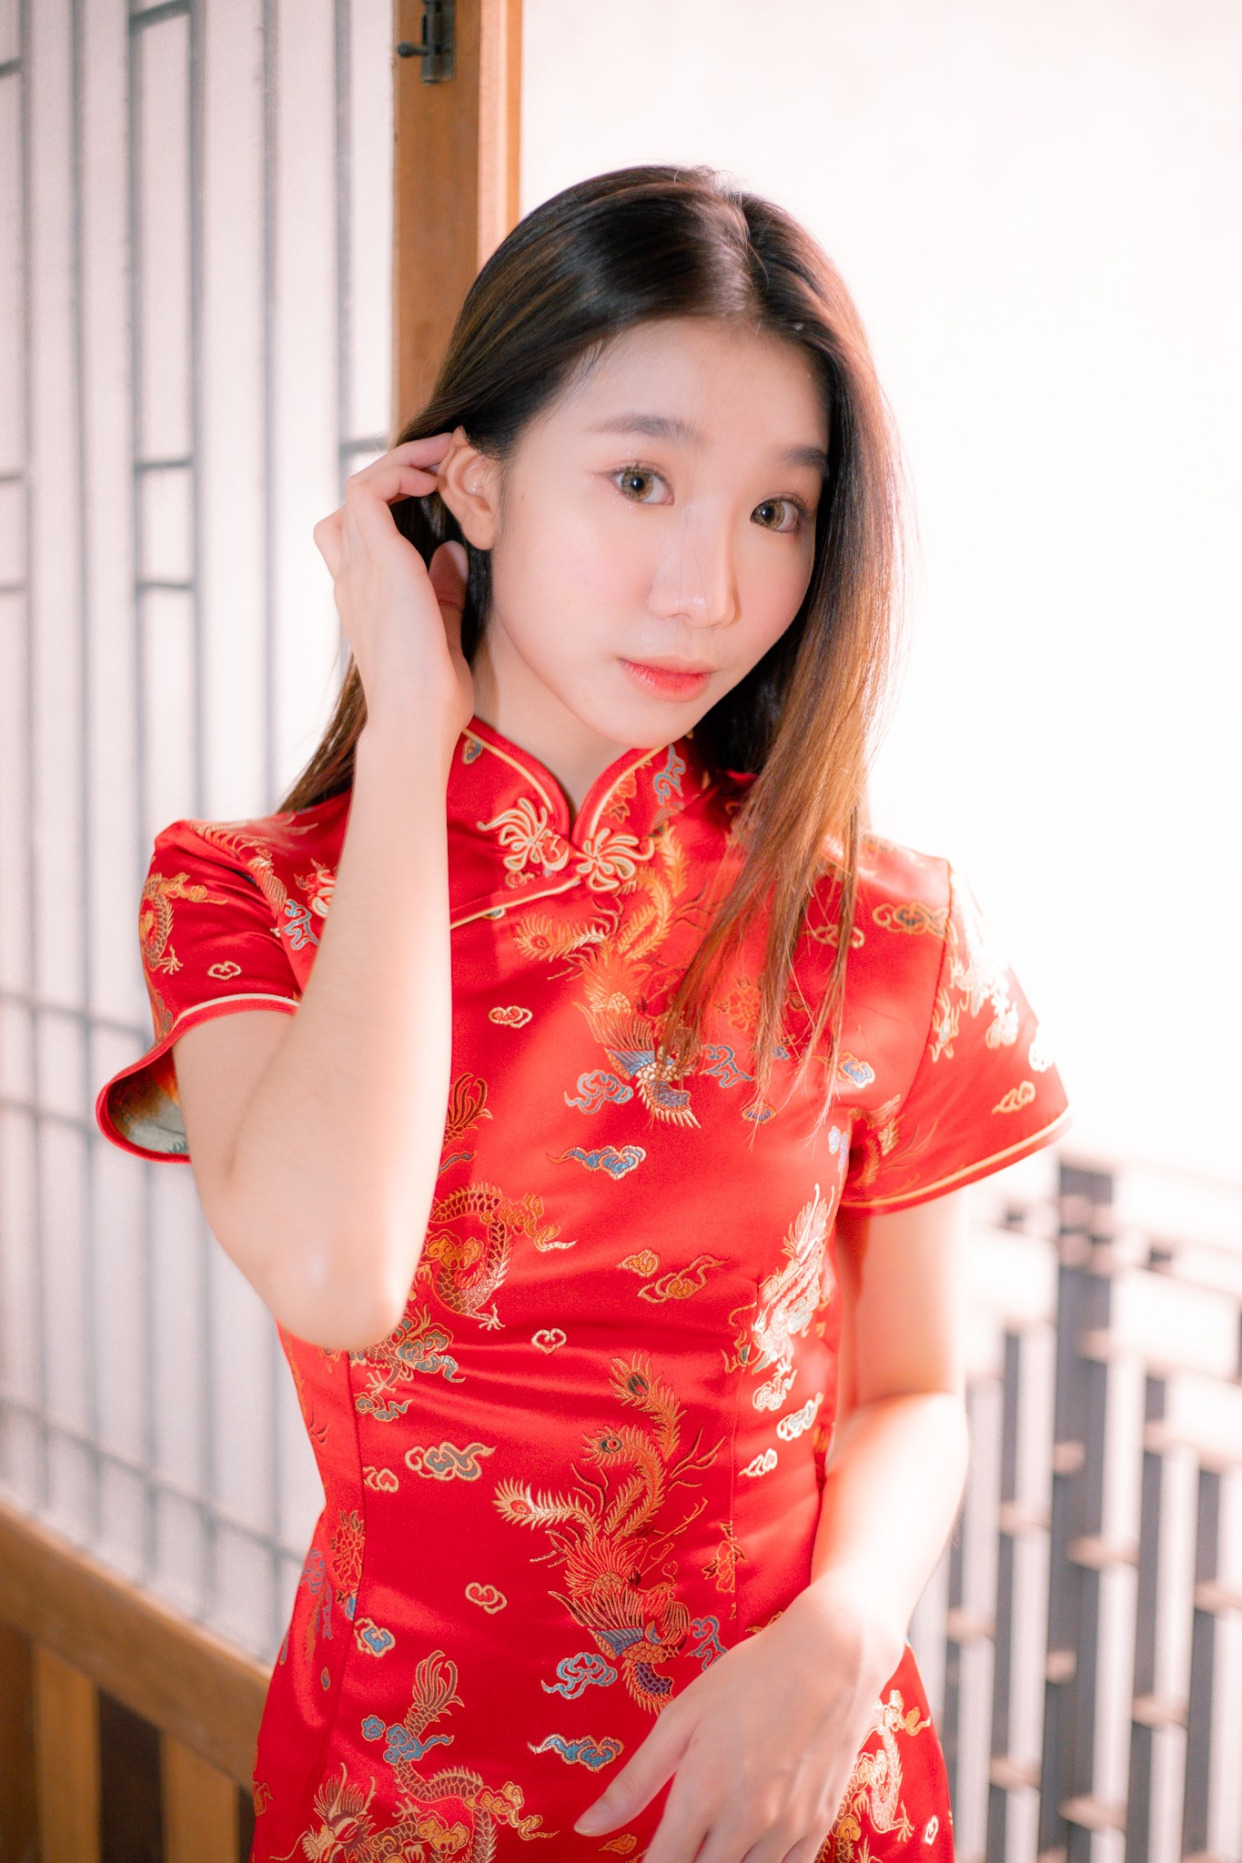 中国红,旗袍美女摄影集